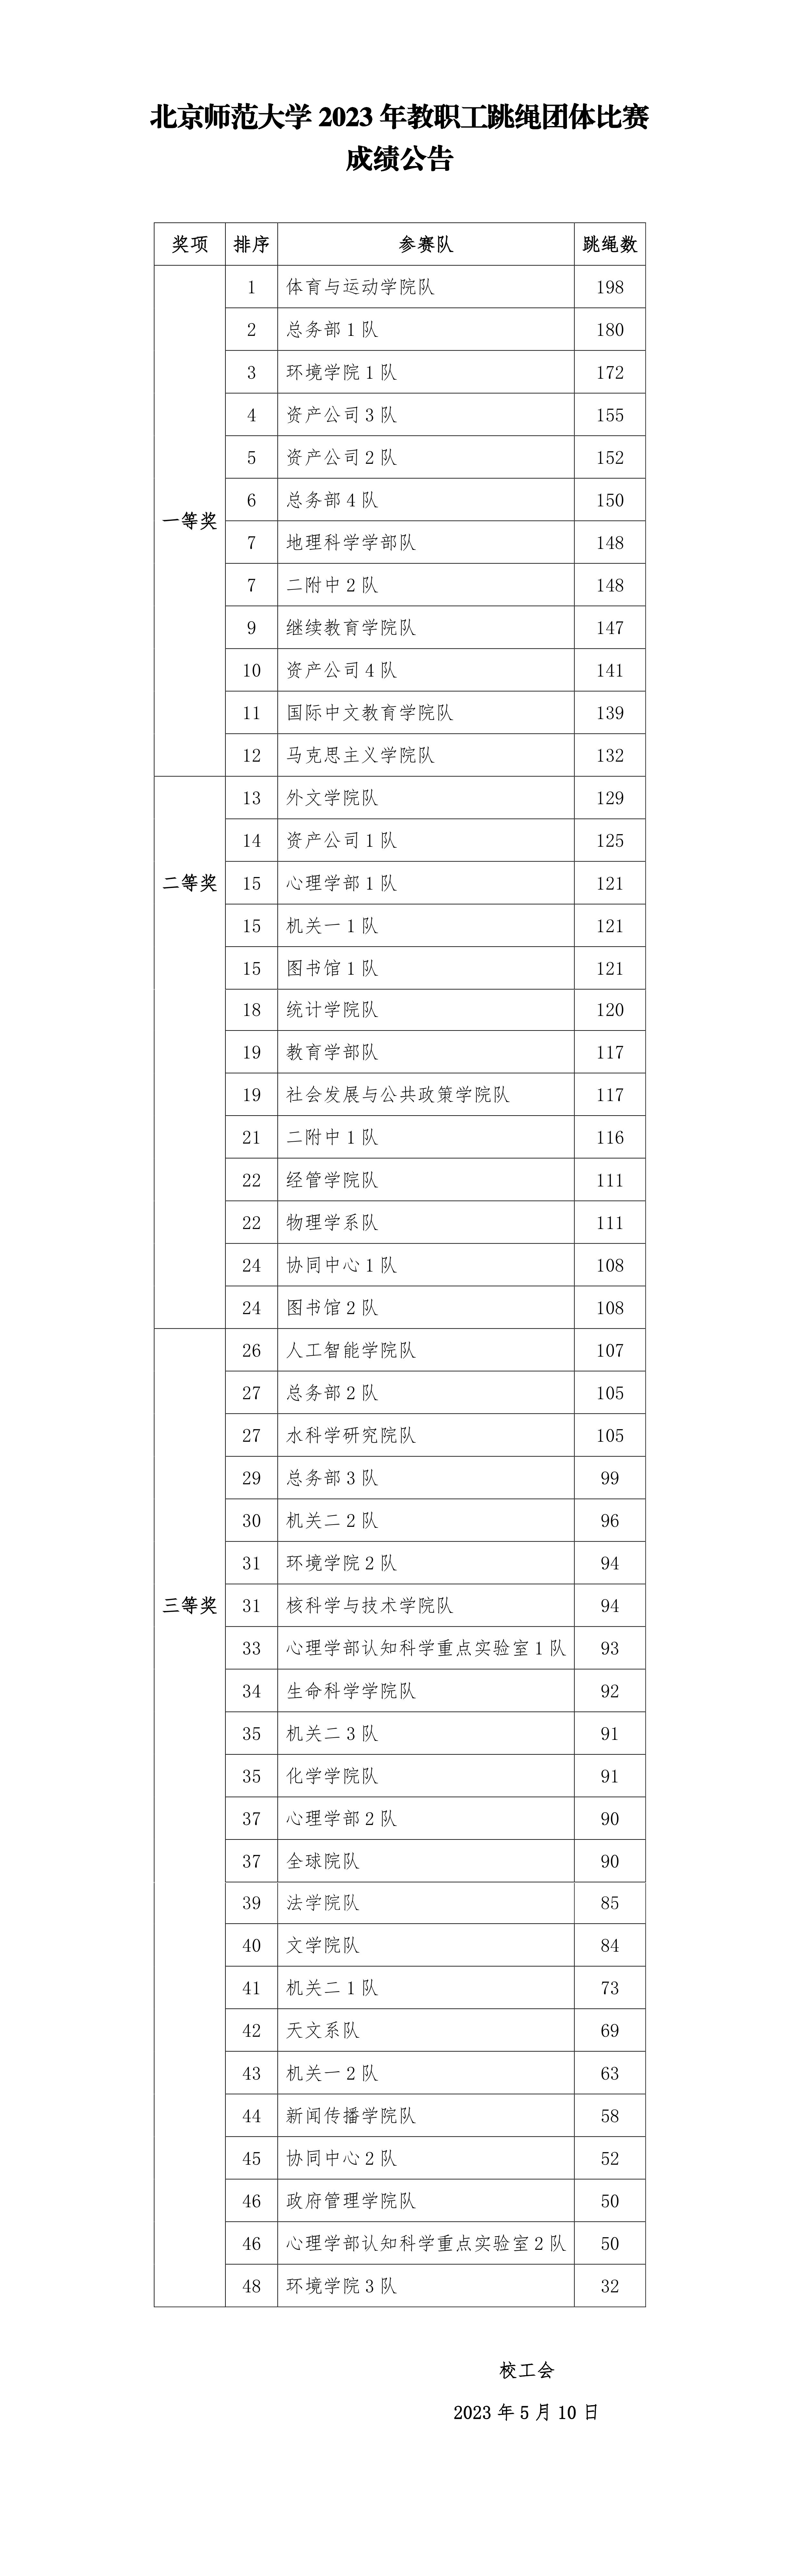 北京师范大学2023年教职工跳绳团体赛成绩公告-已转换.png